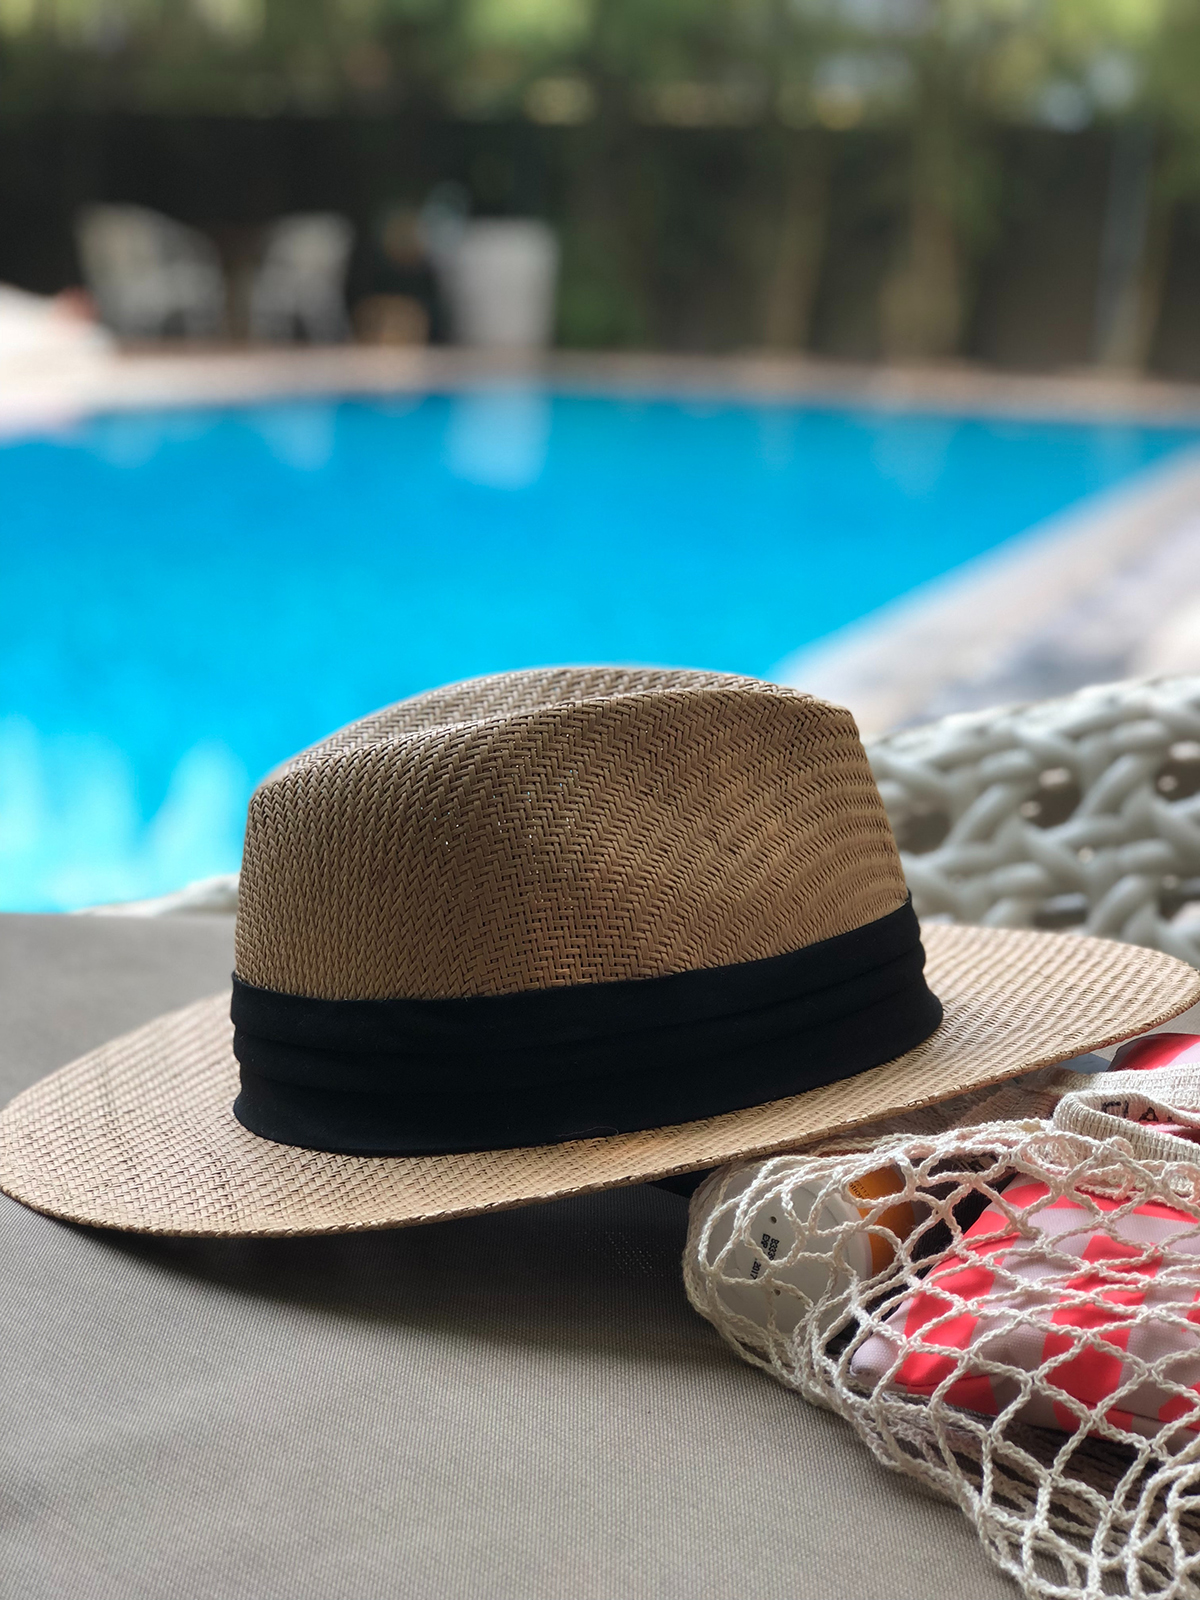 Sebuah topi di tepi kolam renang yang indah